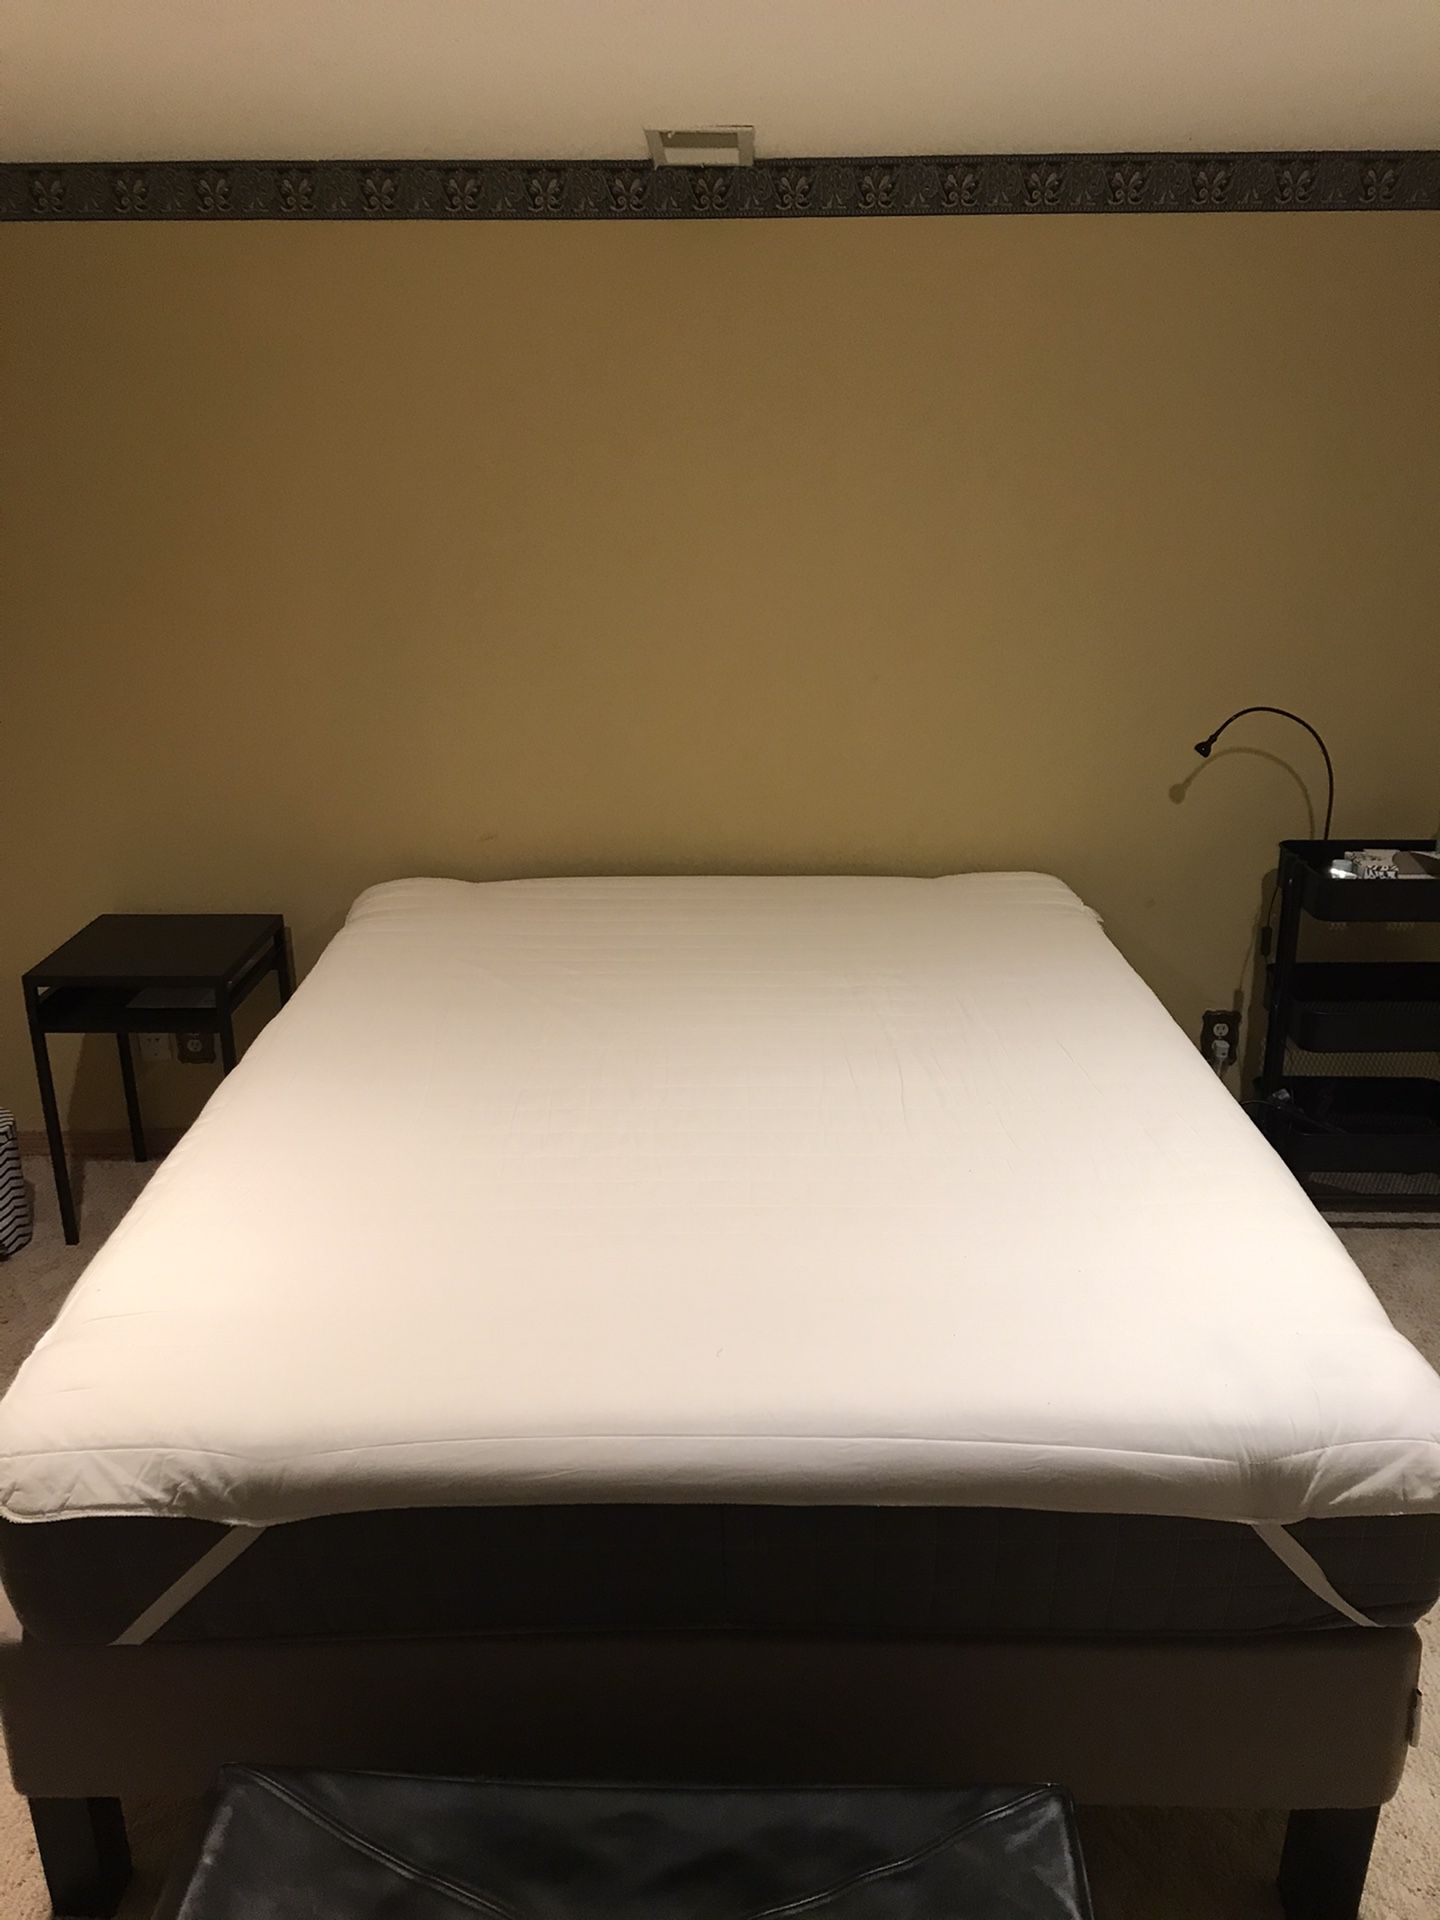 Queen bed (mattress, mattress cover and frame)